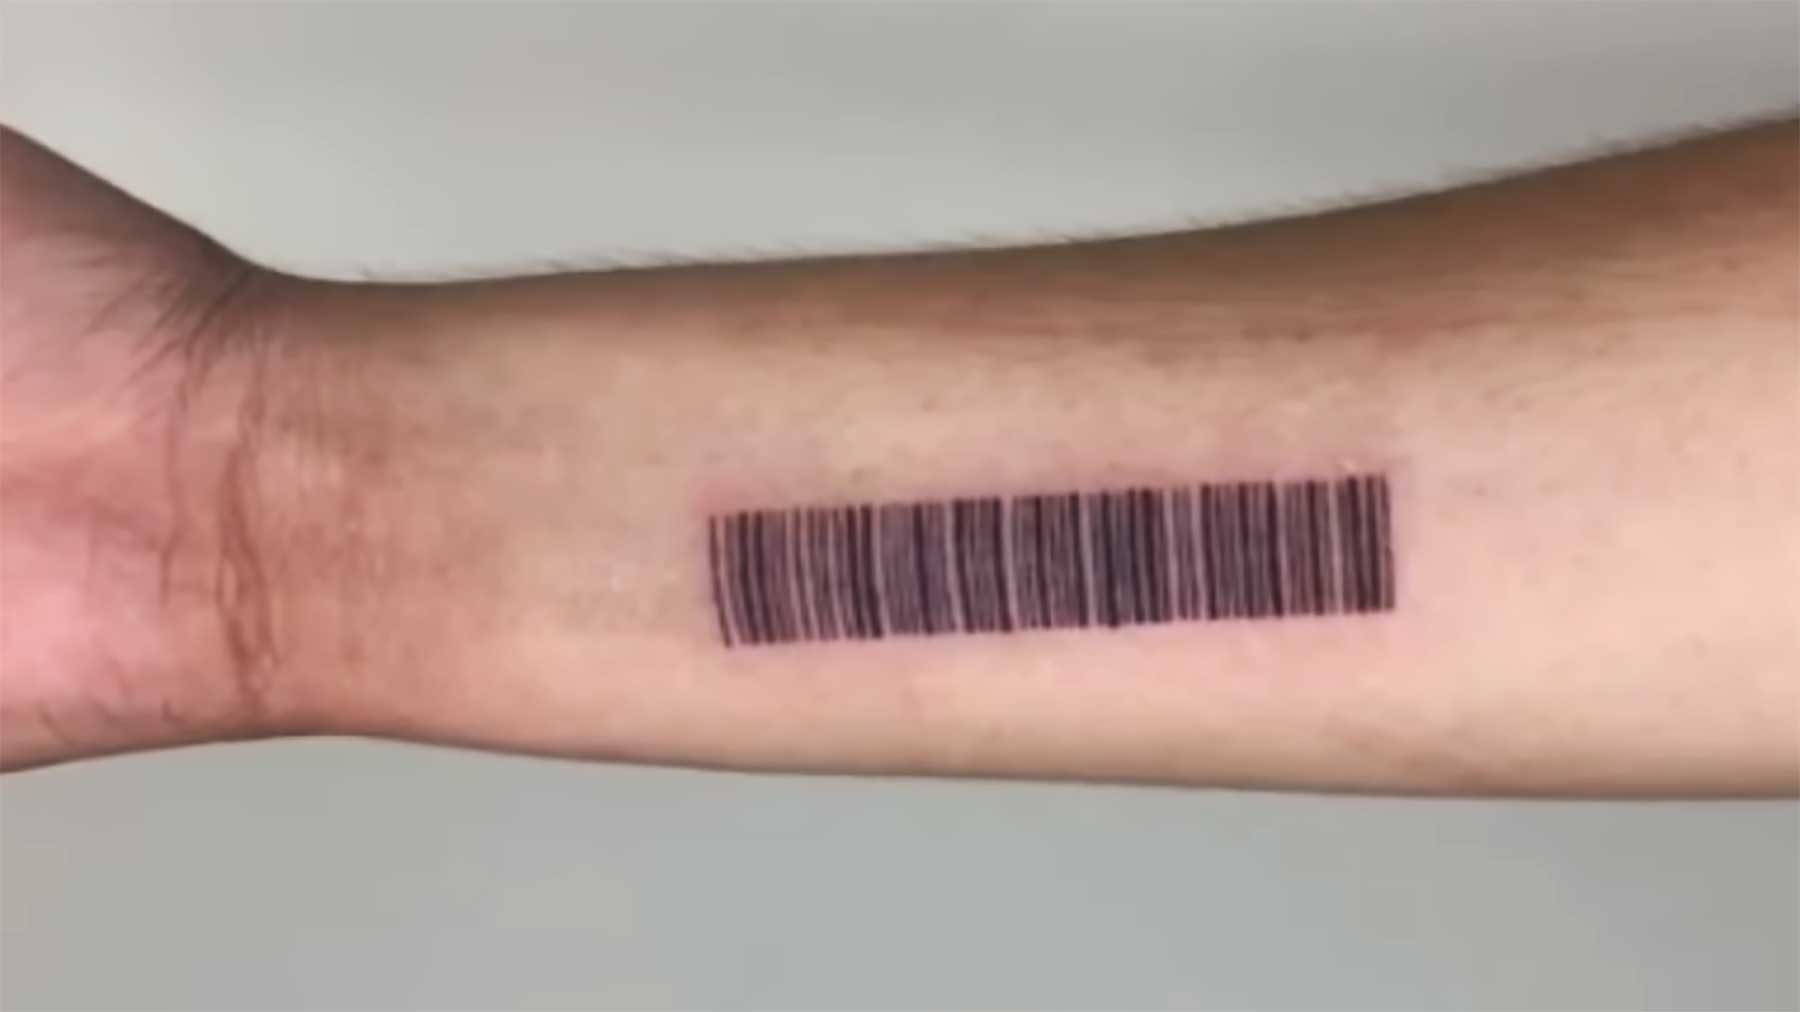 Barcode tätowiert, um damit bezahlen zu können Barcode-tattoo-einkaufen-bezahlen 